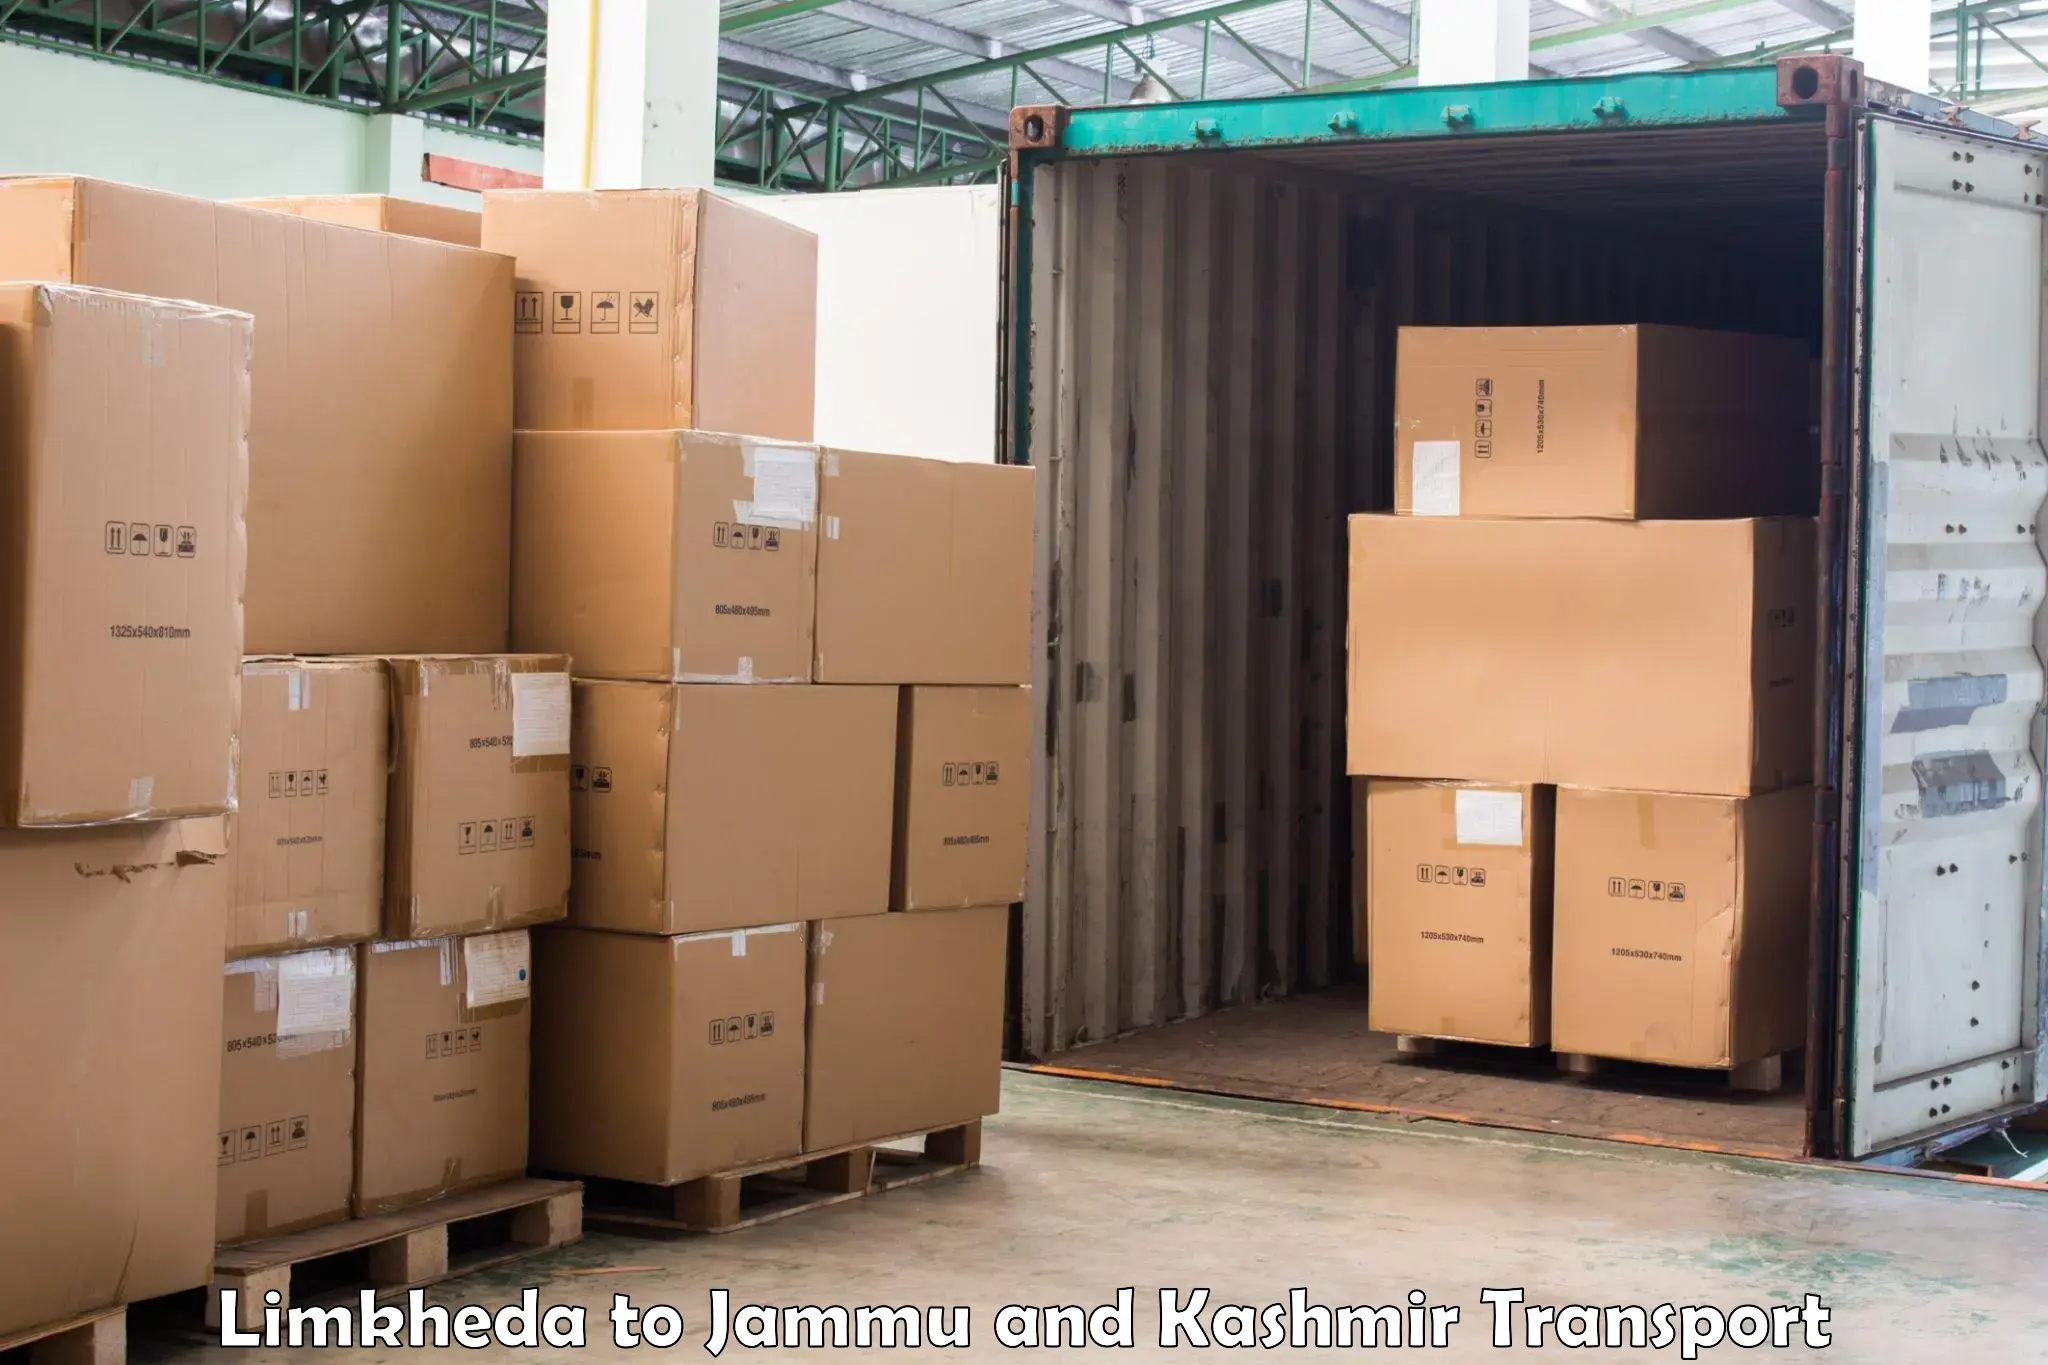 Part load transport service in India Limkheda to Srinagar Kashmir